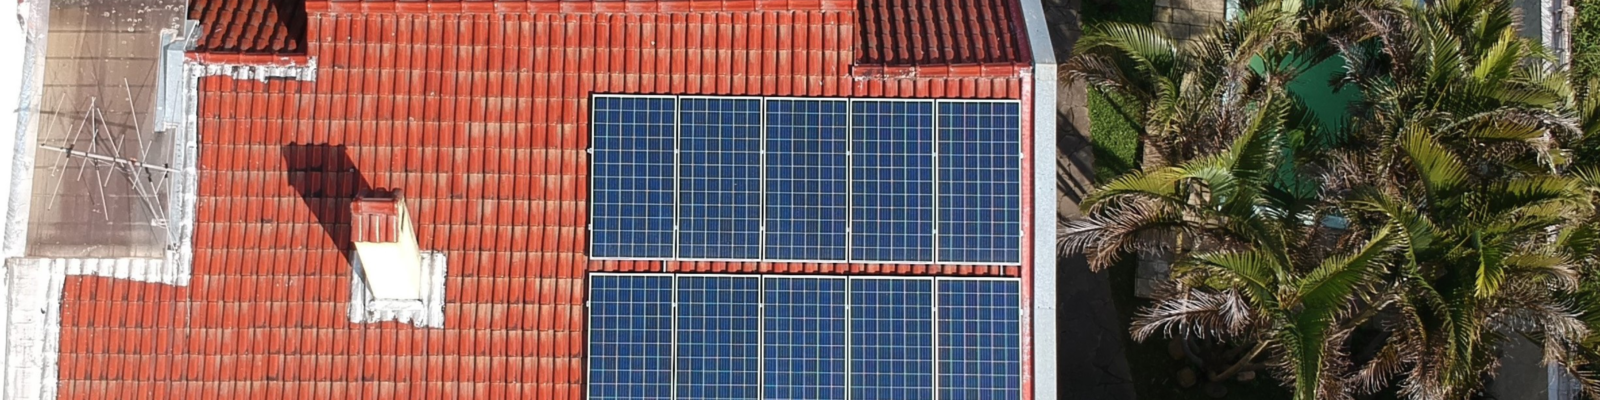 Porto Alegre sistema de energia fotovoltaica - Elysia energia solar RS